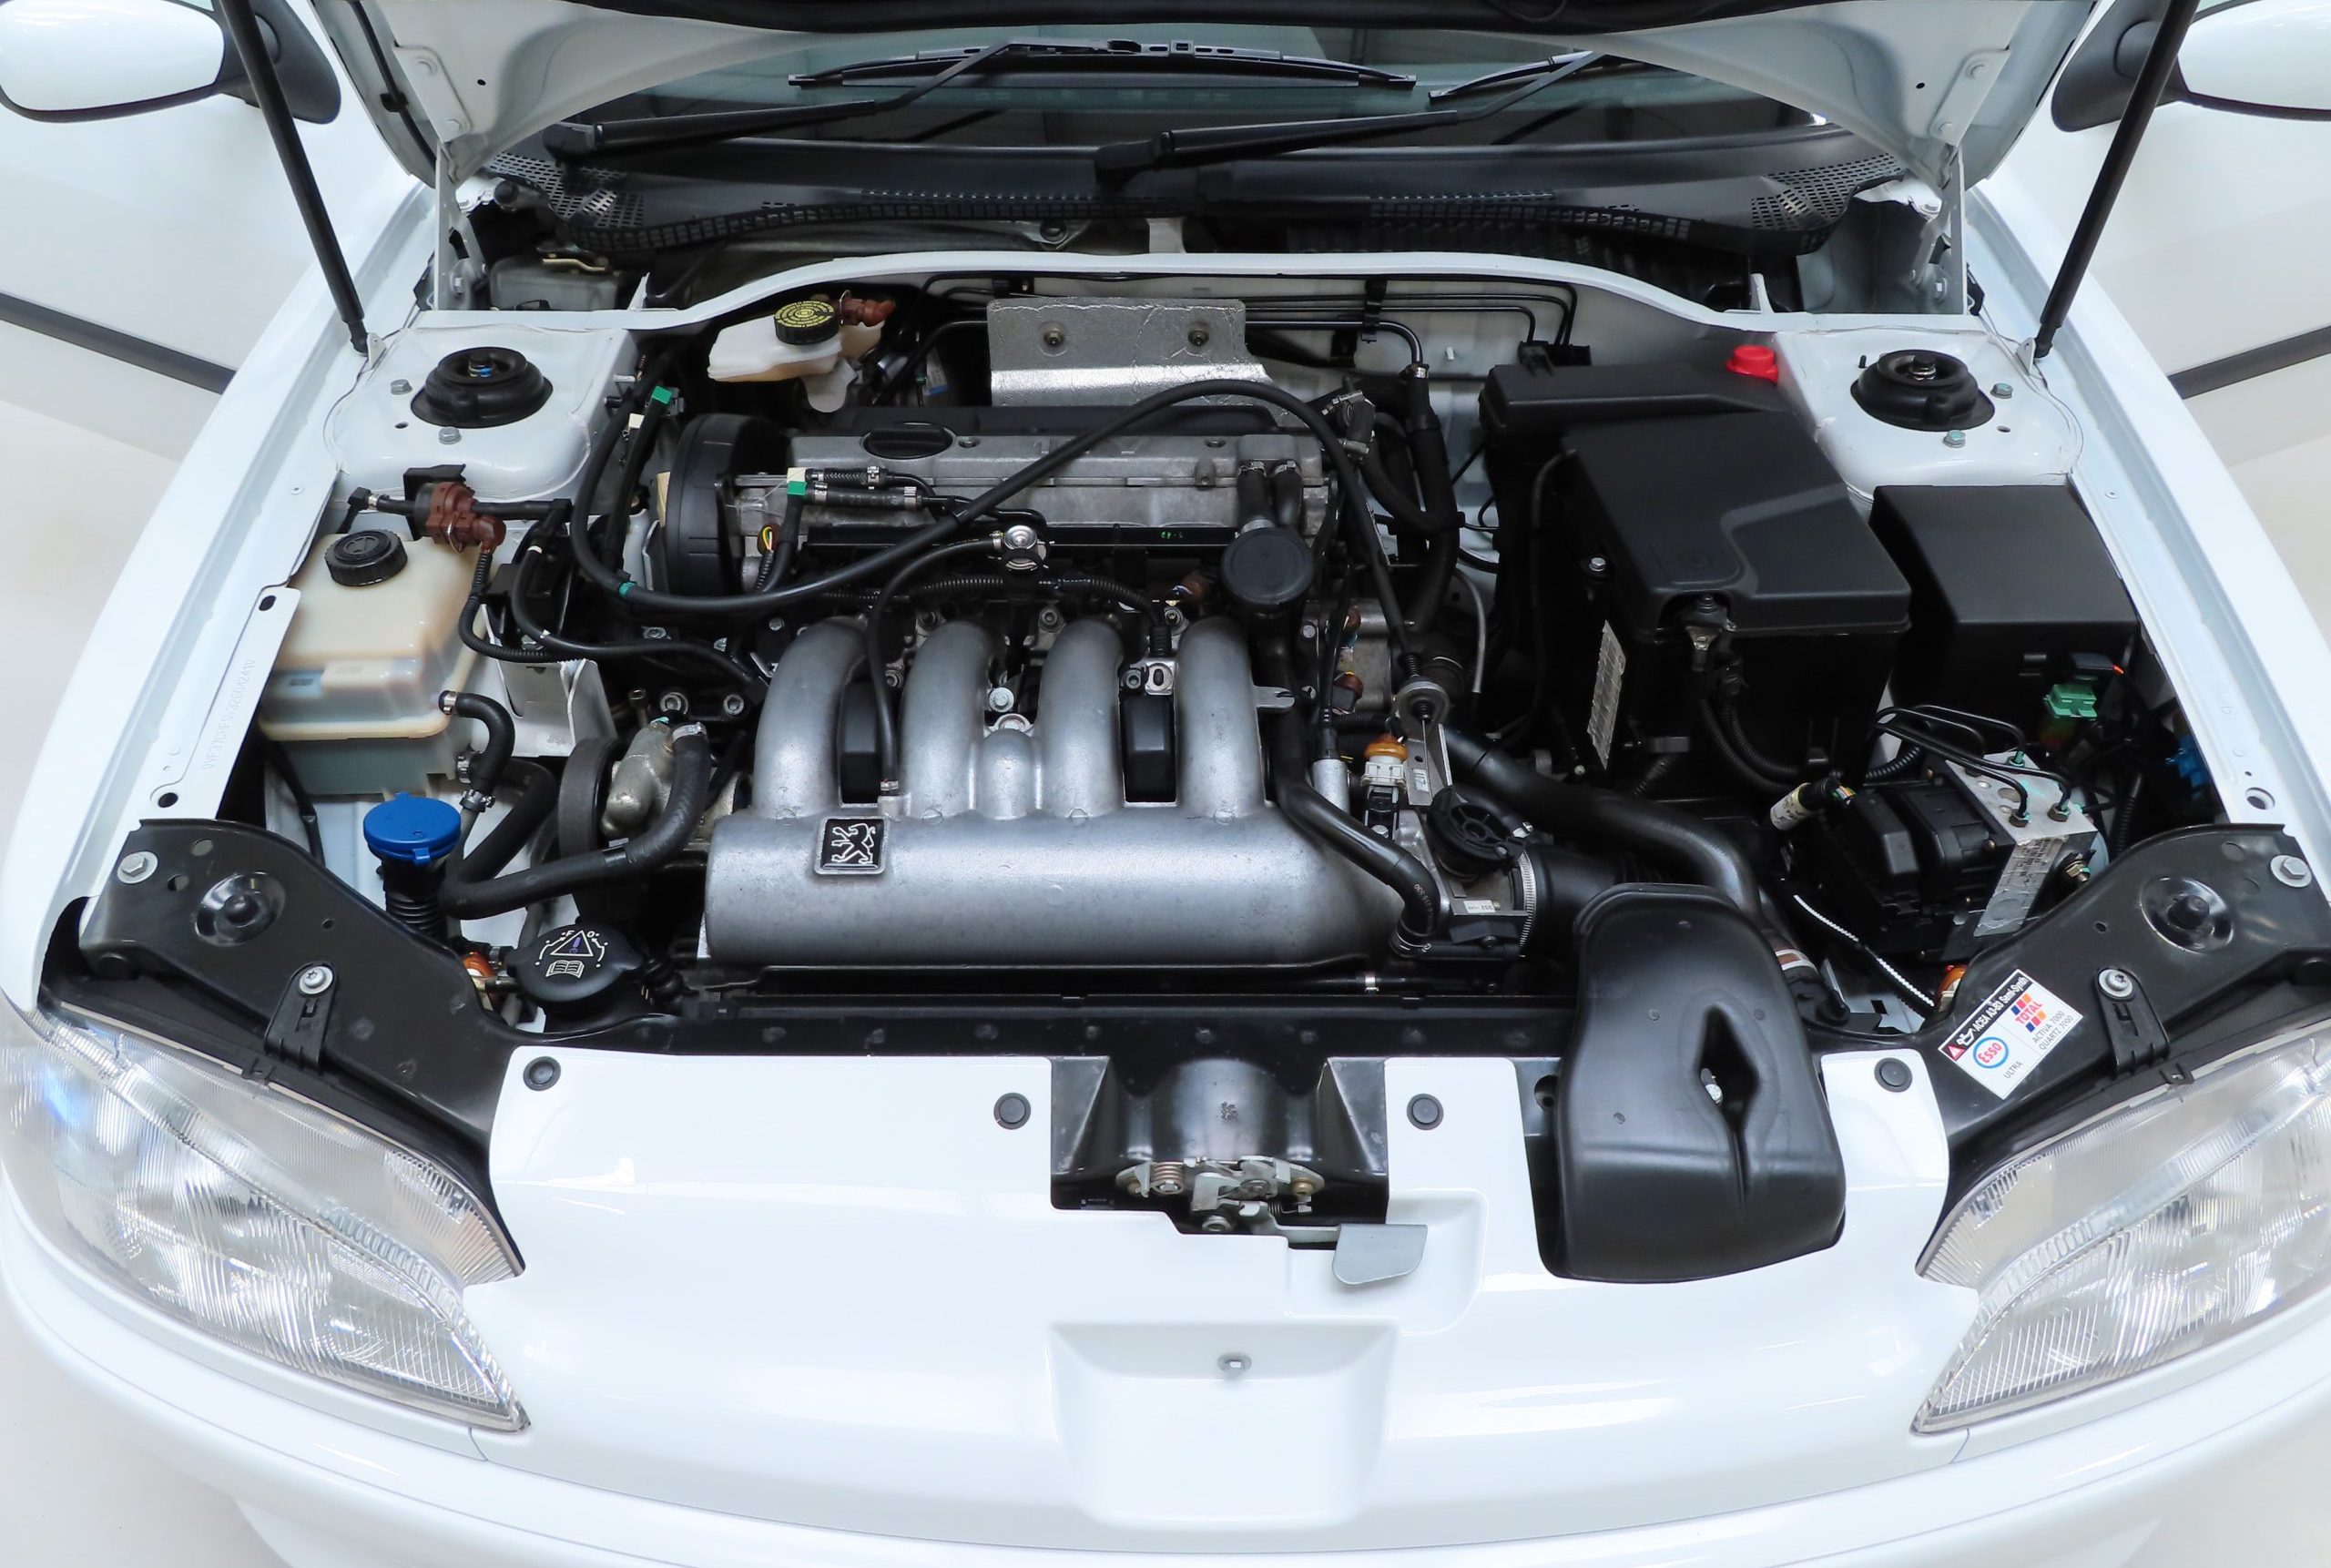 Peugeot 306 Rallye engine